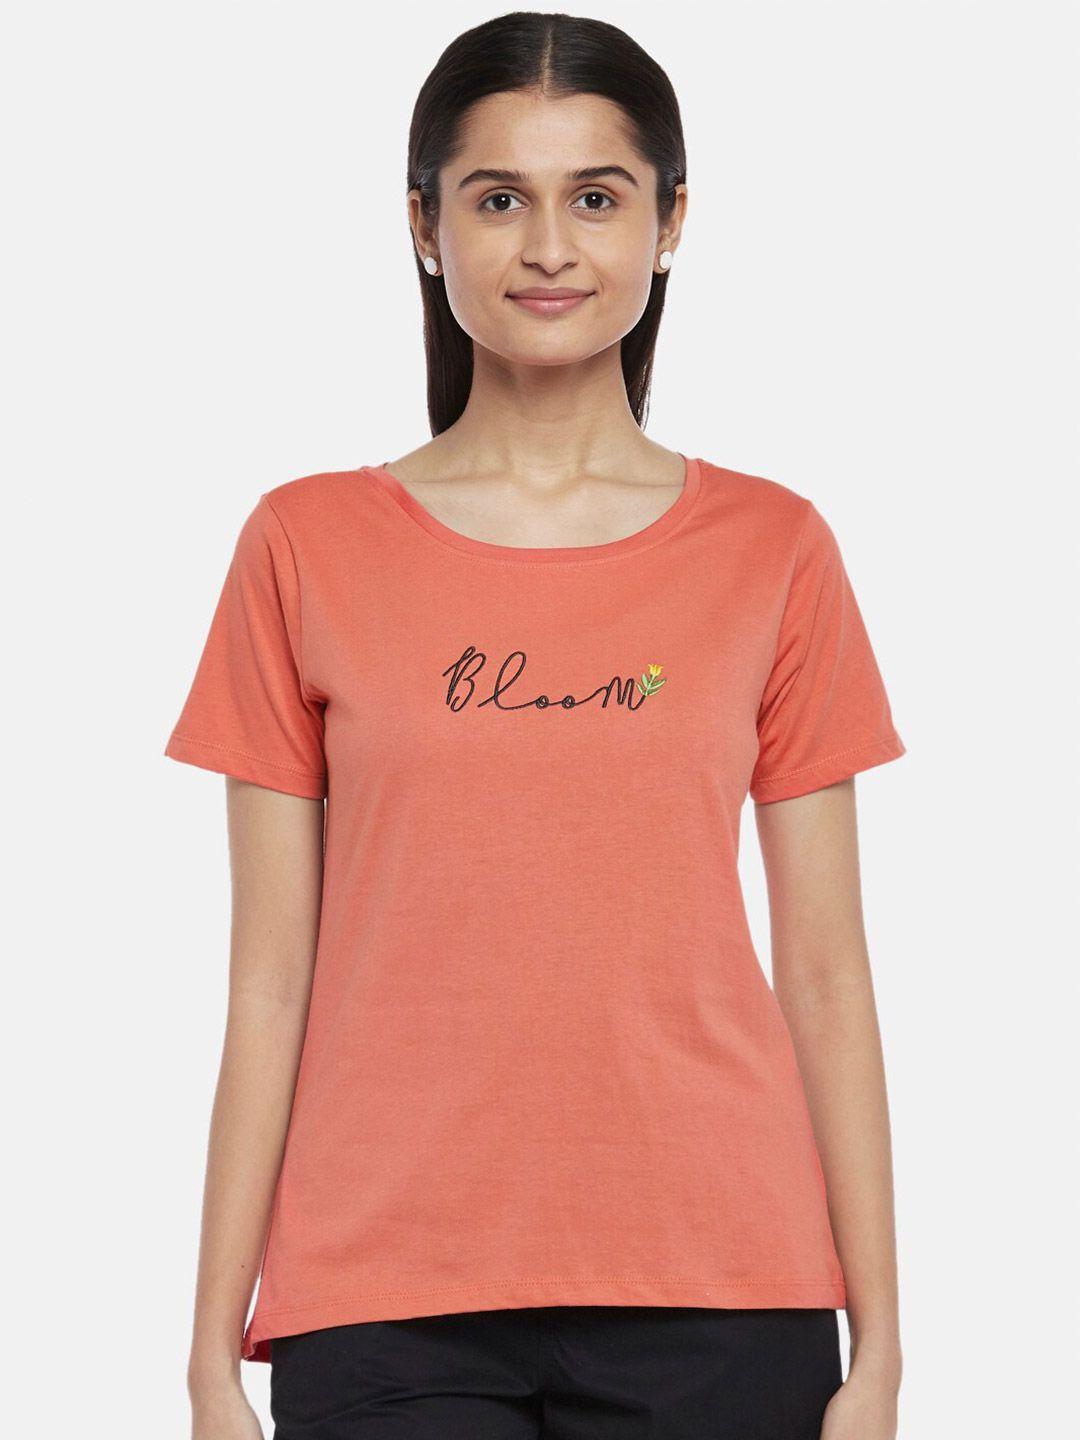 honey-by-pantaloons-women-coral-printed-t-shirt